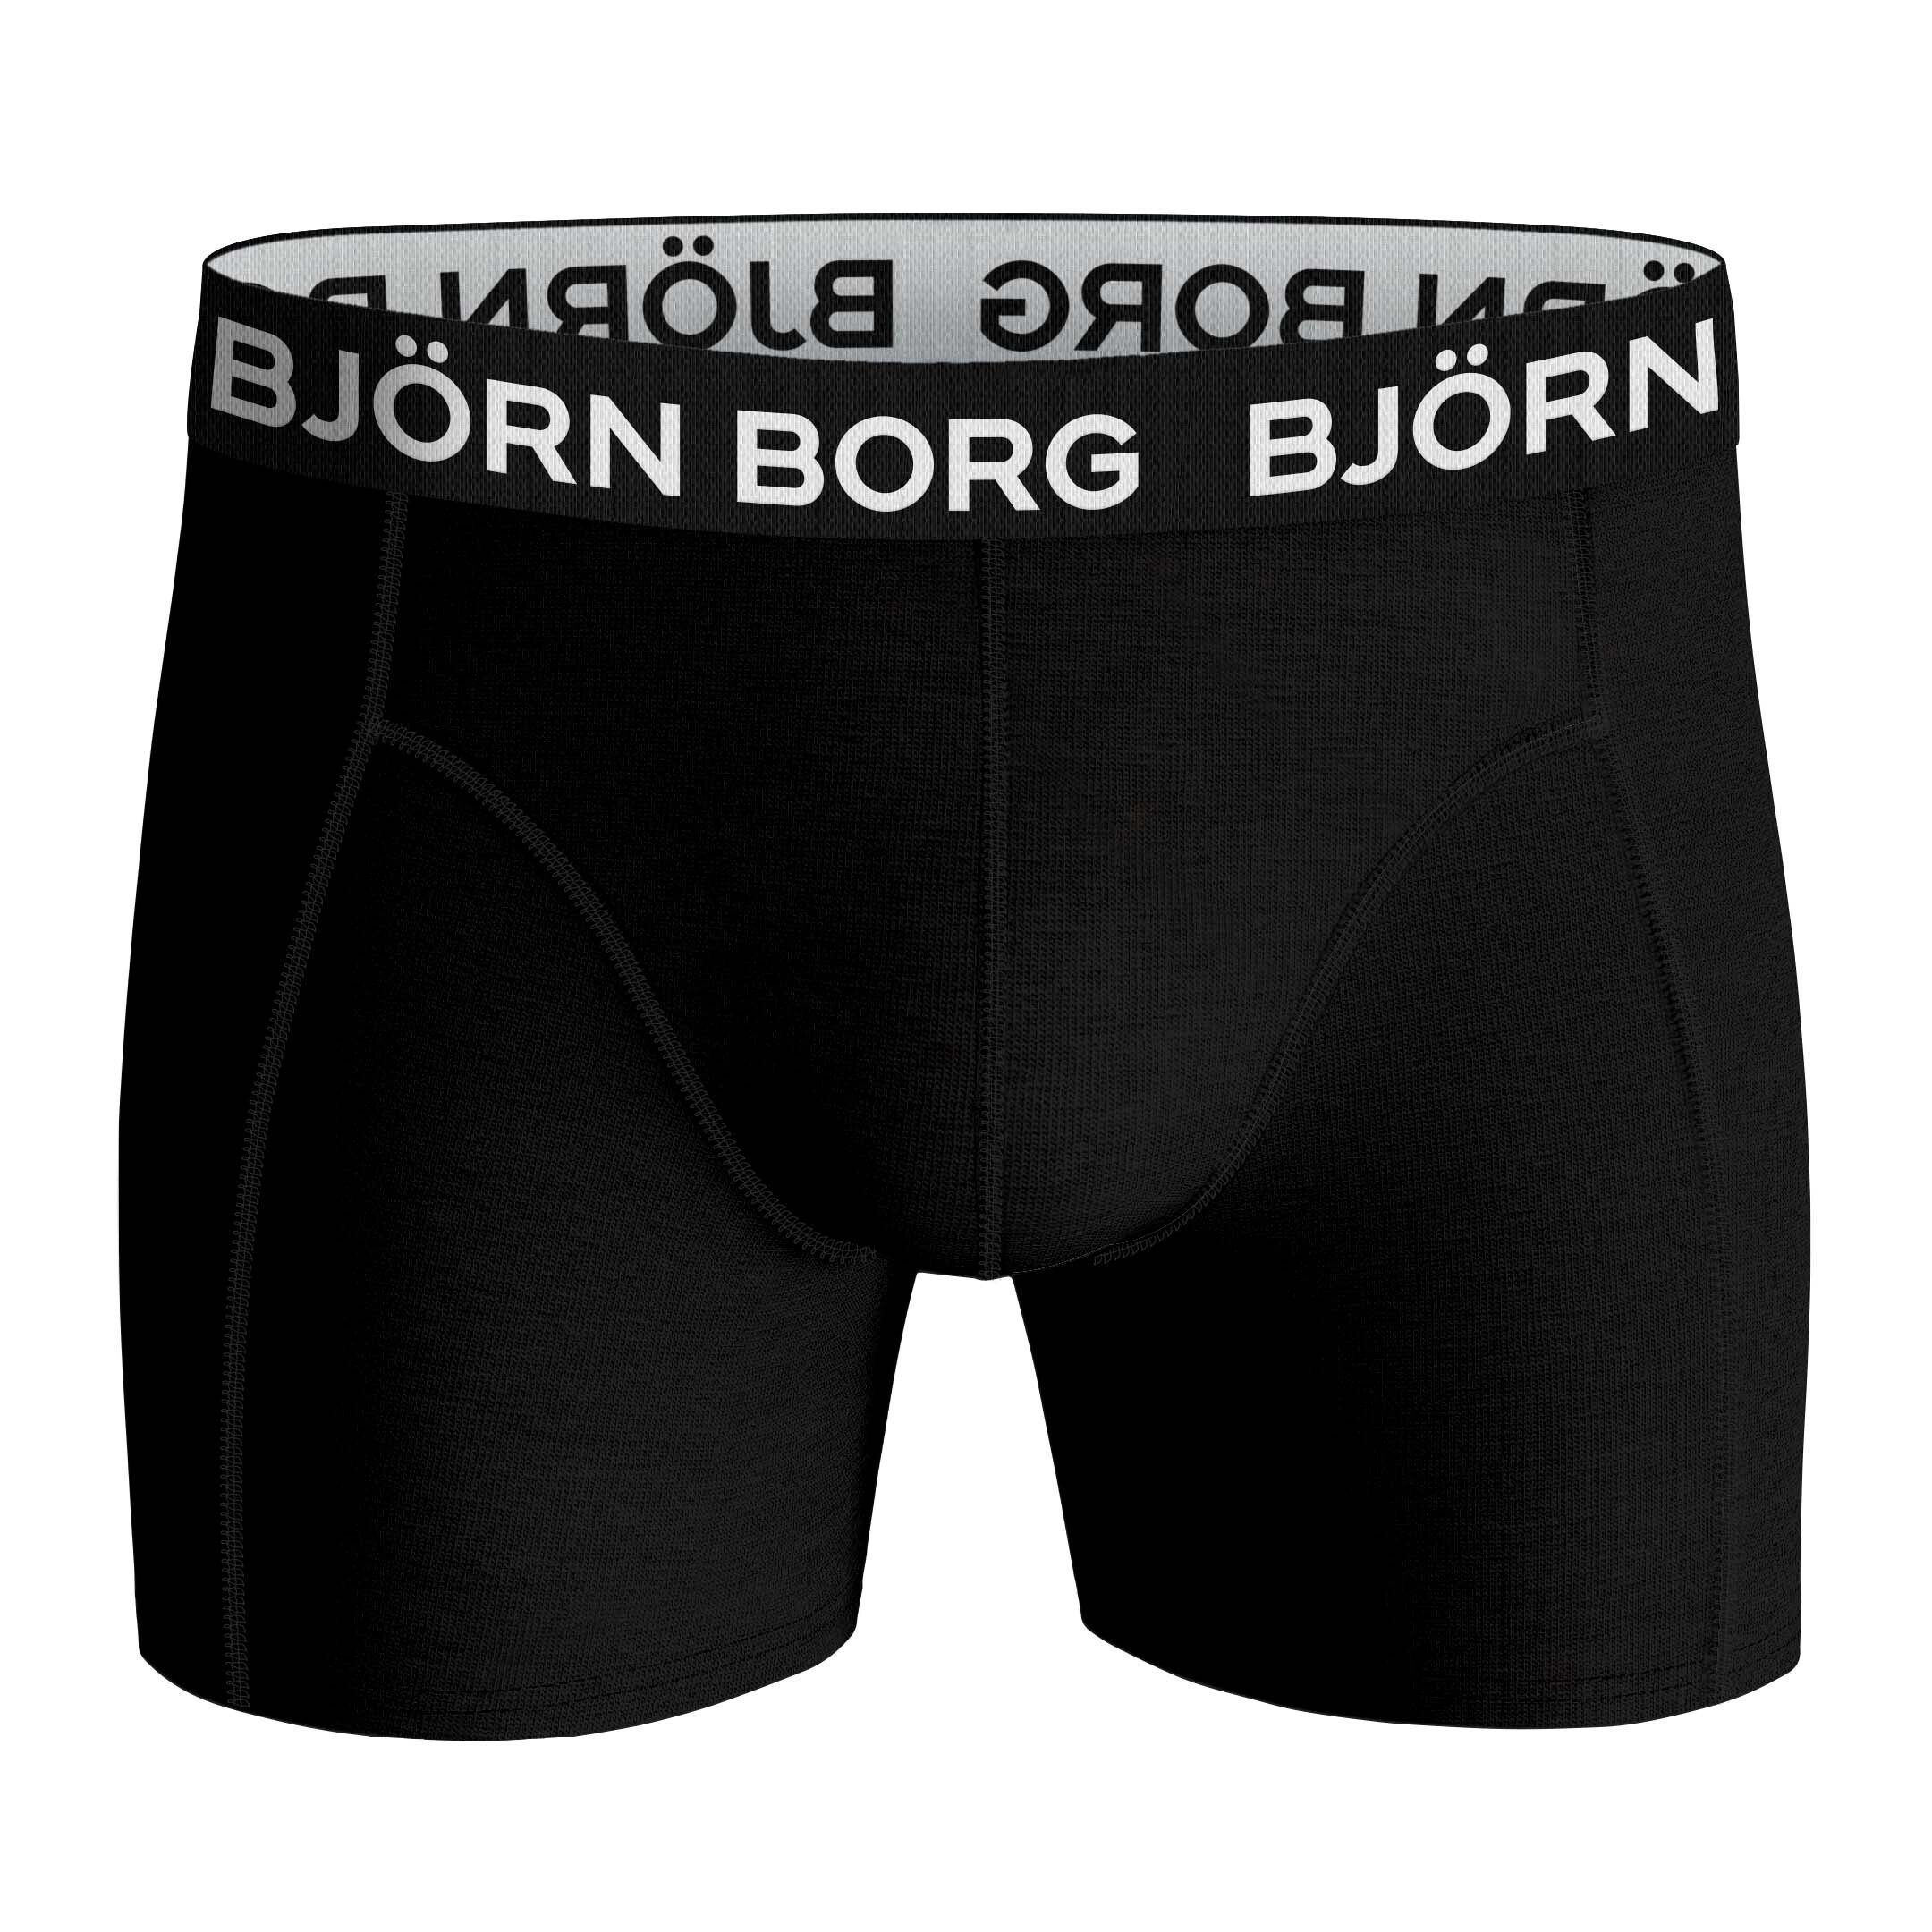 Borg Boxer Herren Stretch Boxershorts Cotton - Schwarz/Rot/Grün Pack Björn 7er